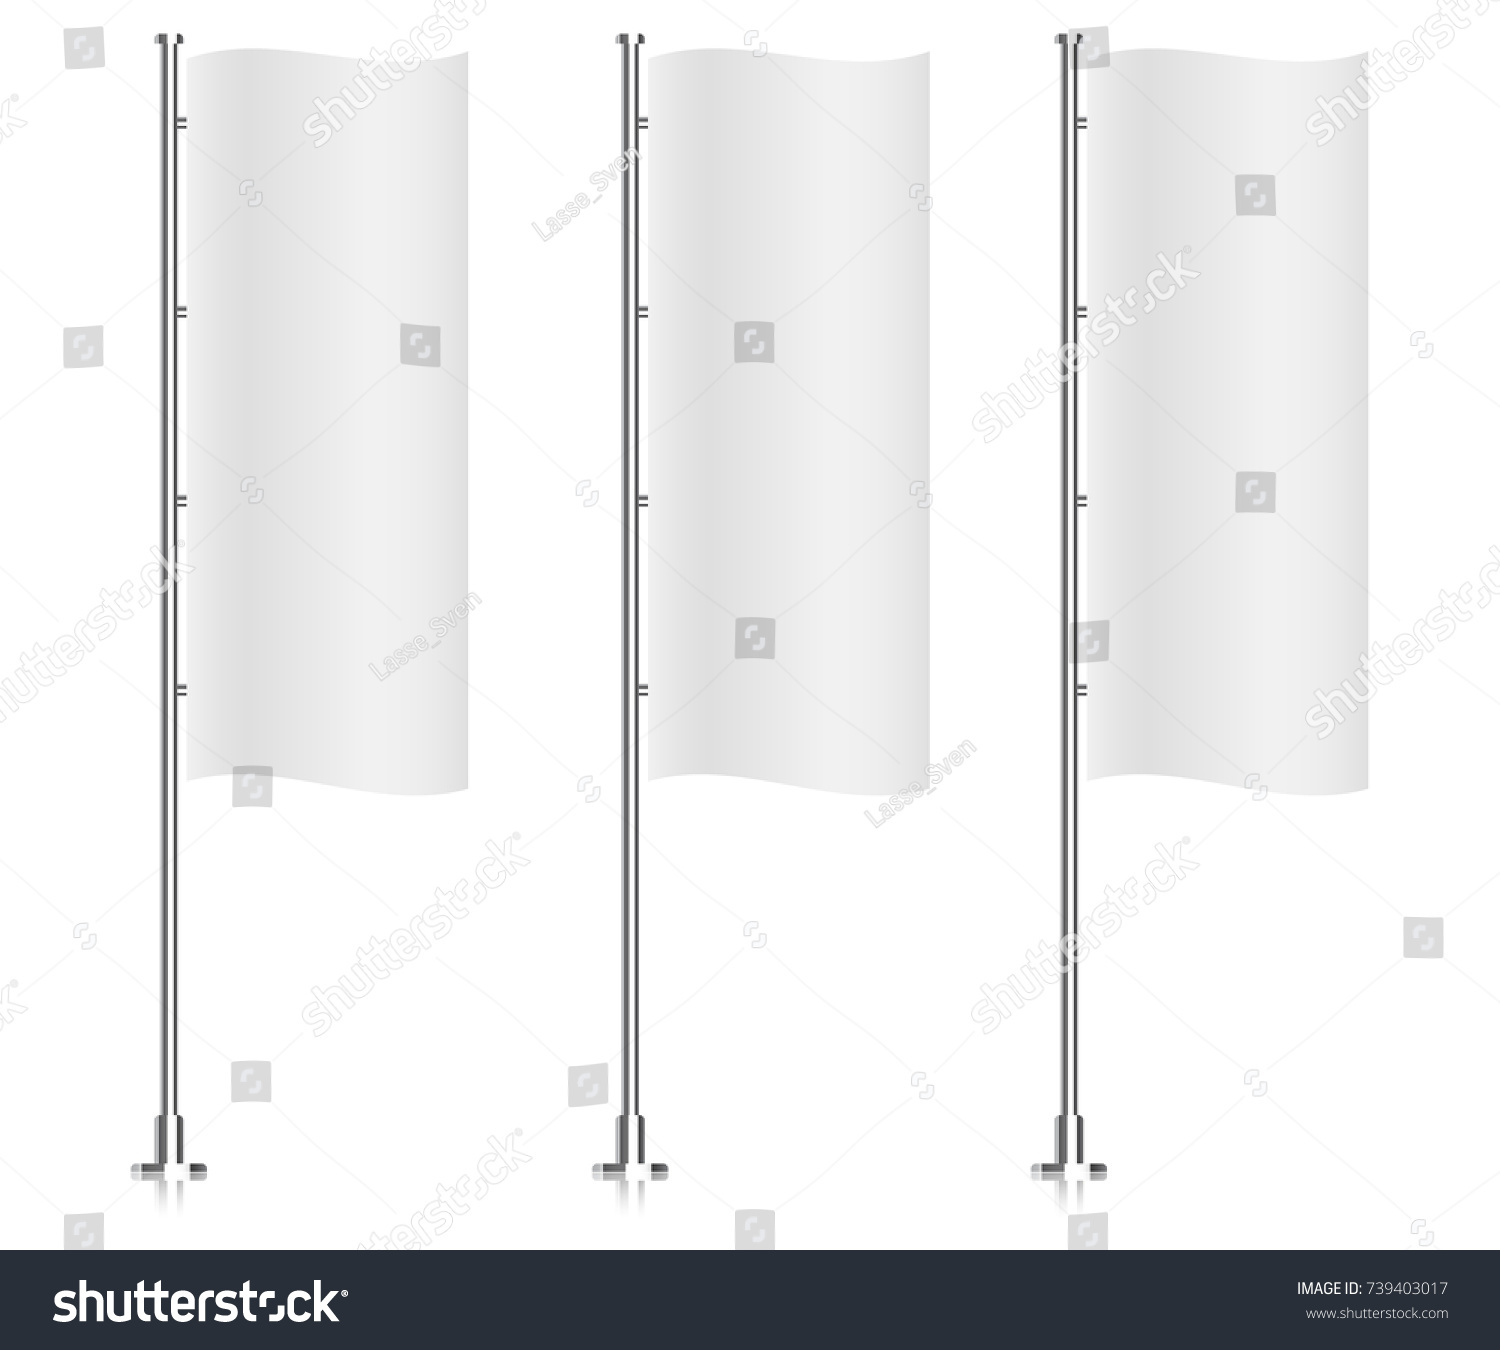 Vertical flag mockup. Banner white flag templates #739403017